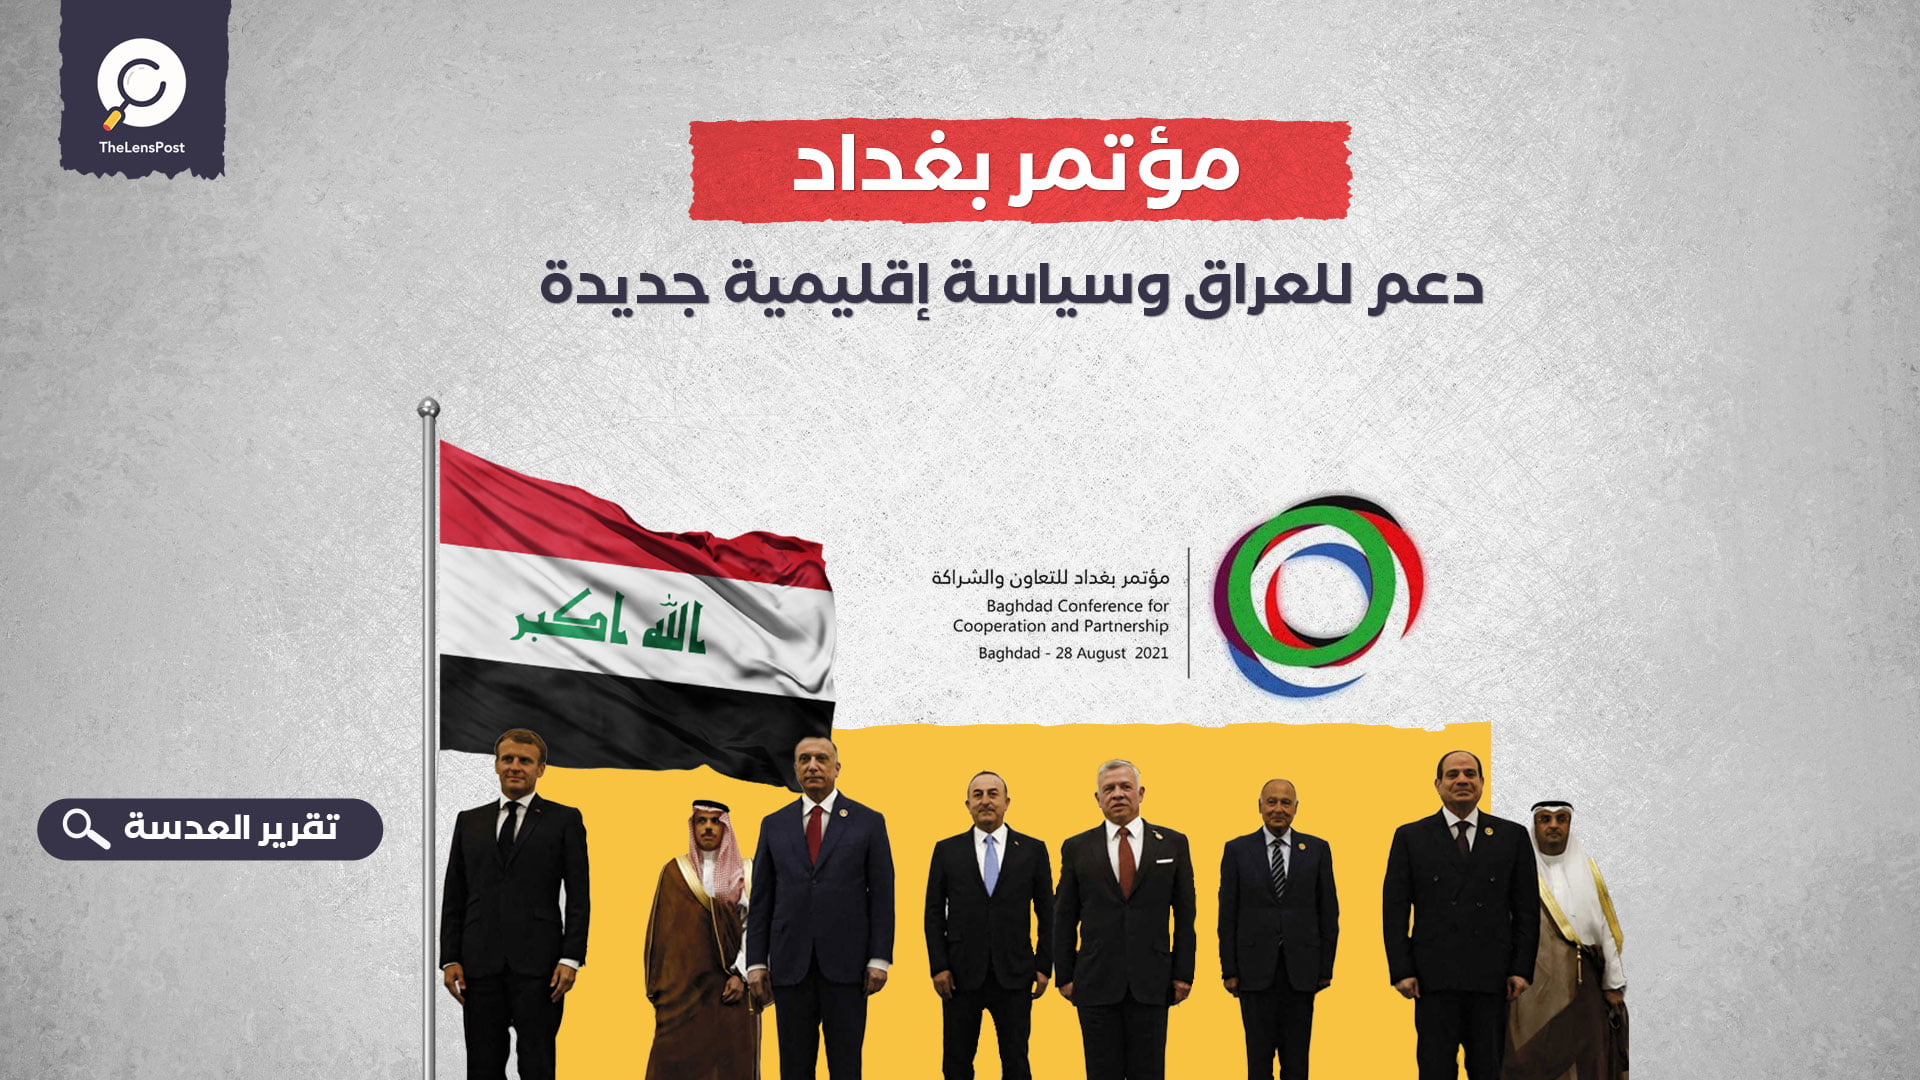 مؤتمر بغداد.. دعم للعراق وسياسة إقليمية جديدة